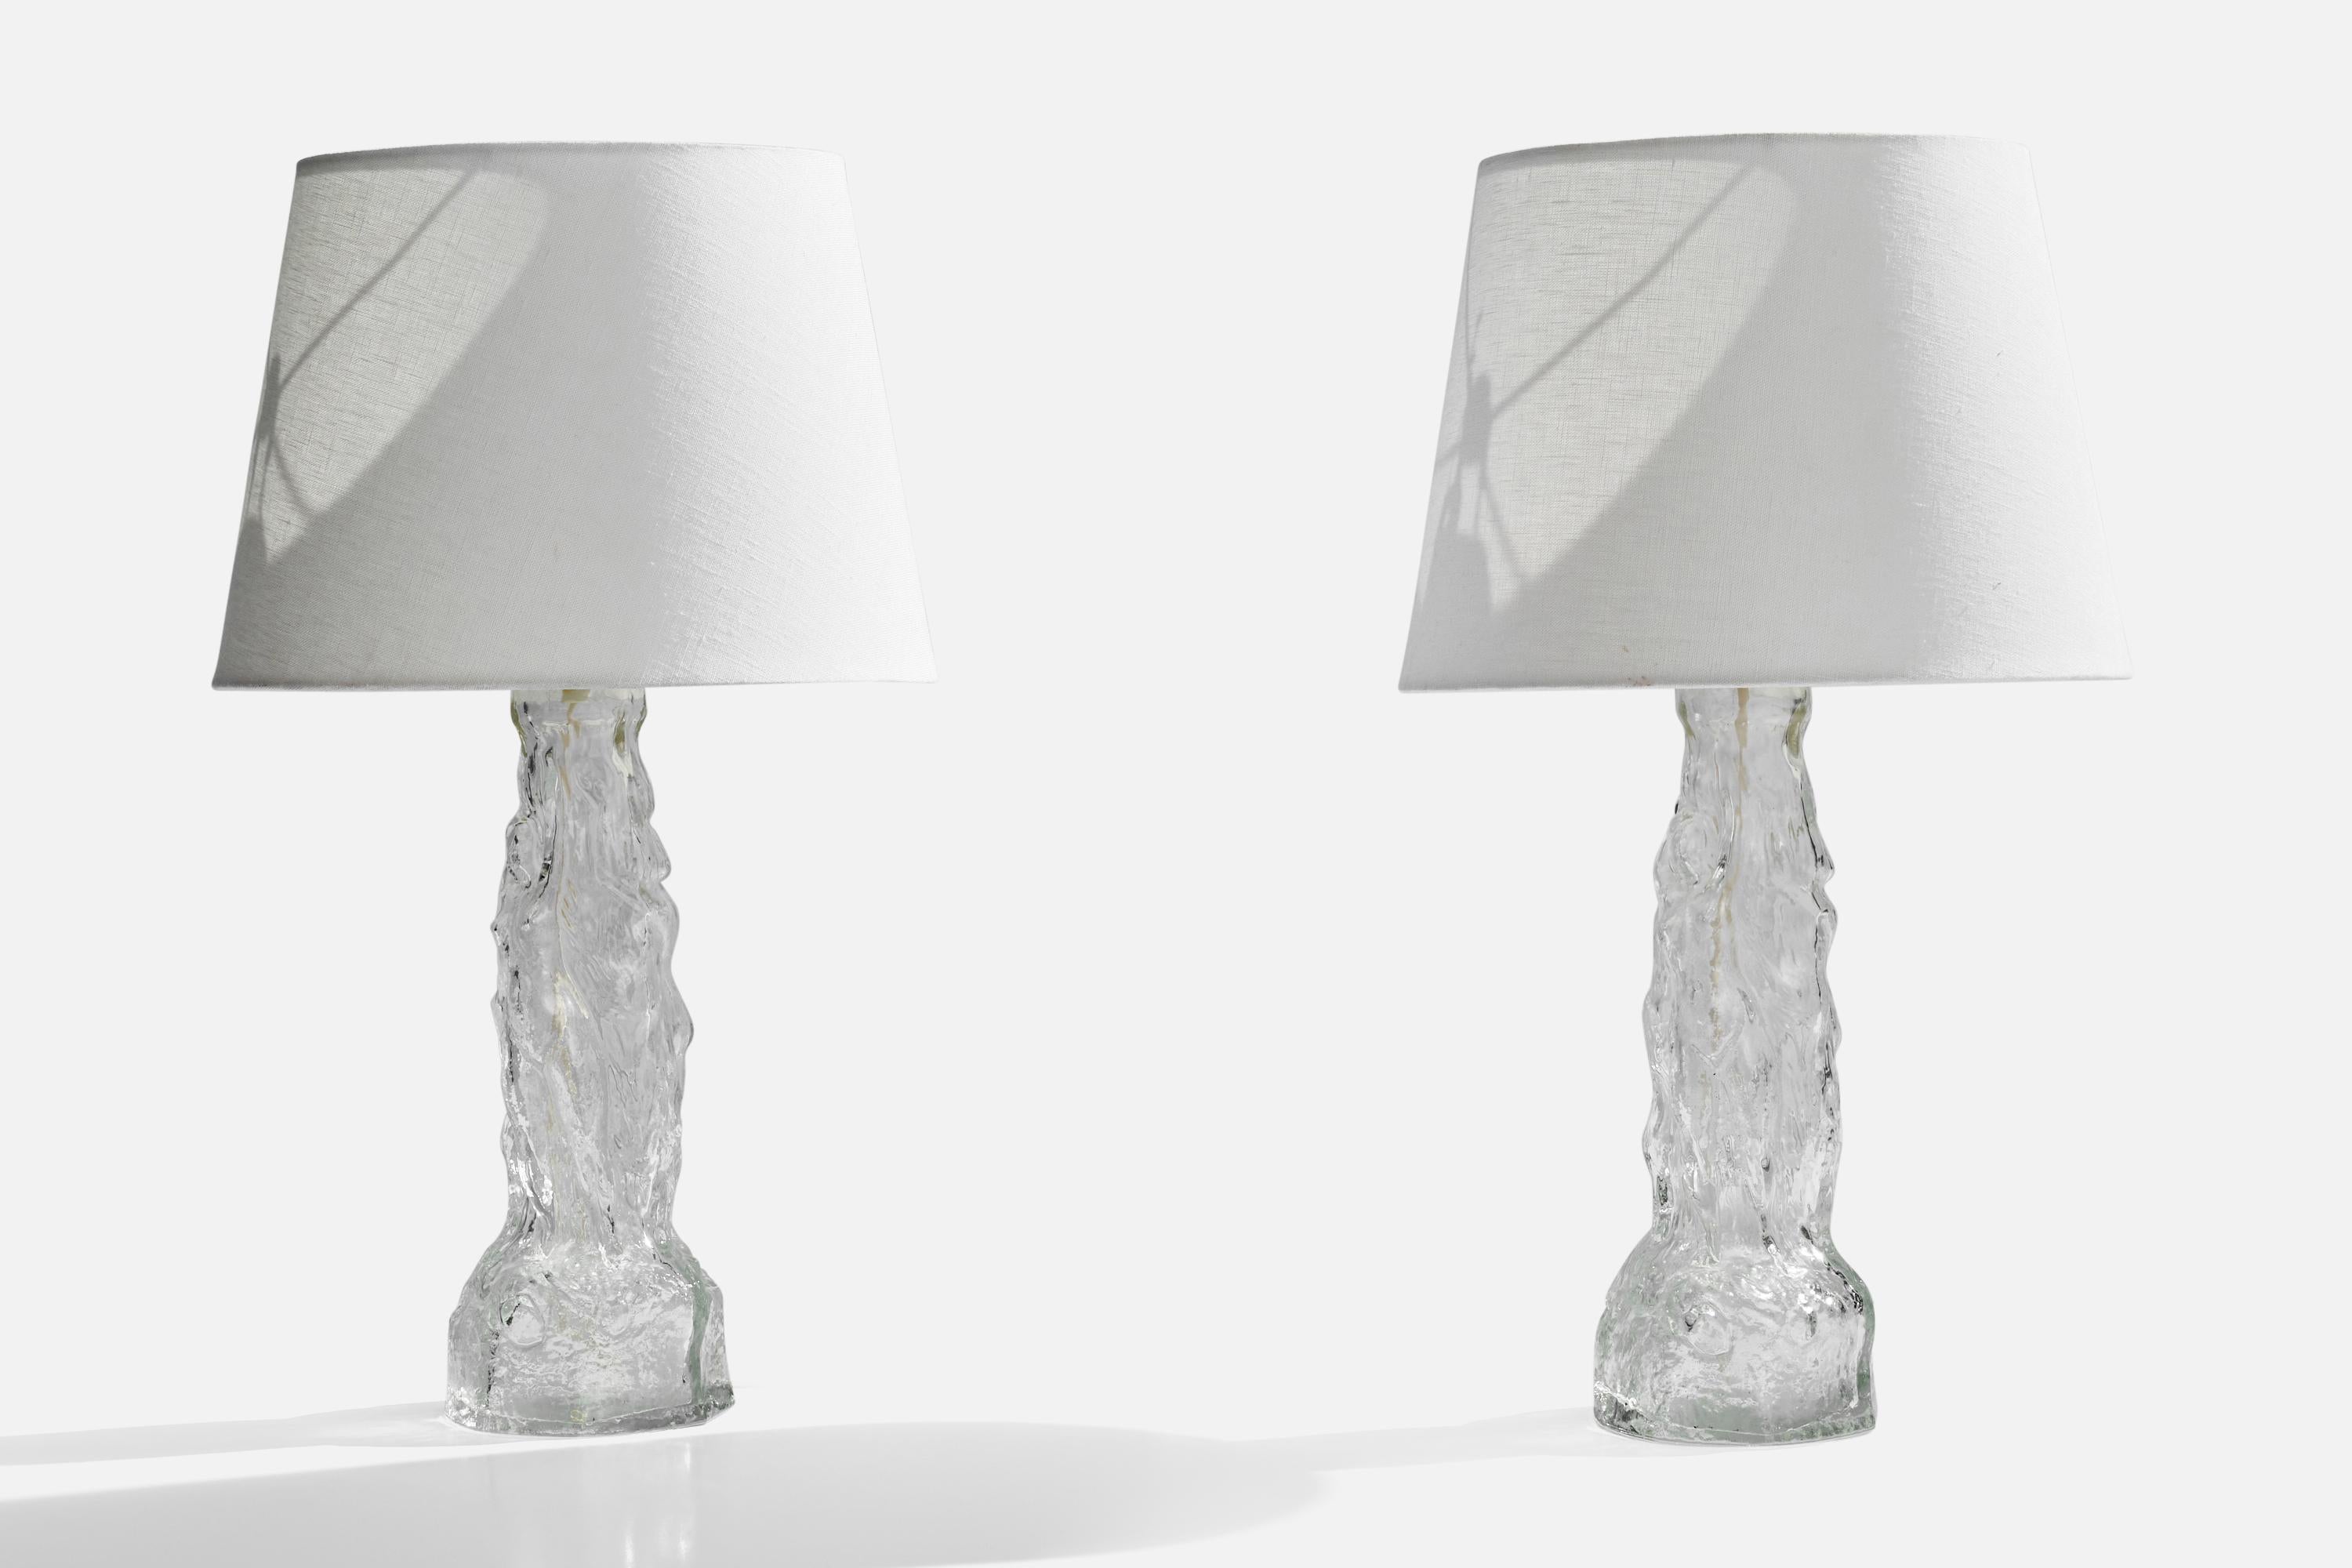 Ein Paar Tischlampen aus Glas und Messing, entworfen und hergestellt in Schweden, 1960er Jahre.

Abmessungen der Lampe (Zoll): 15,5